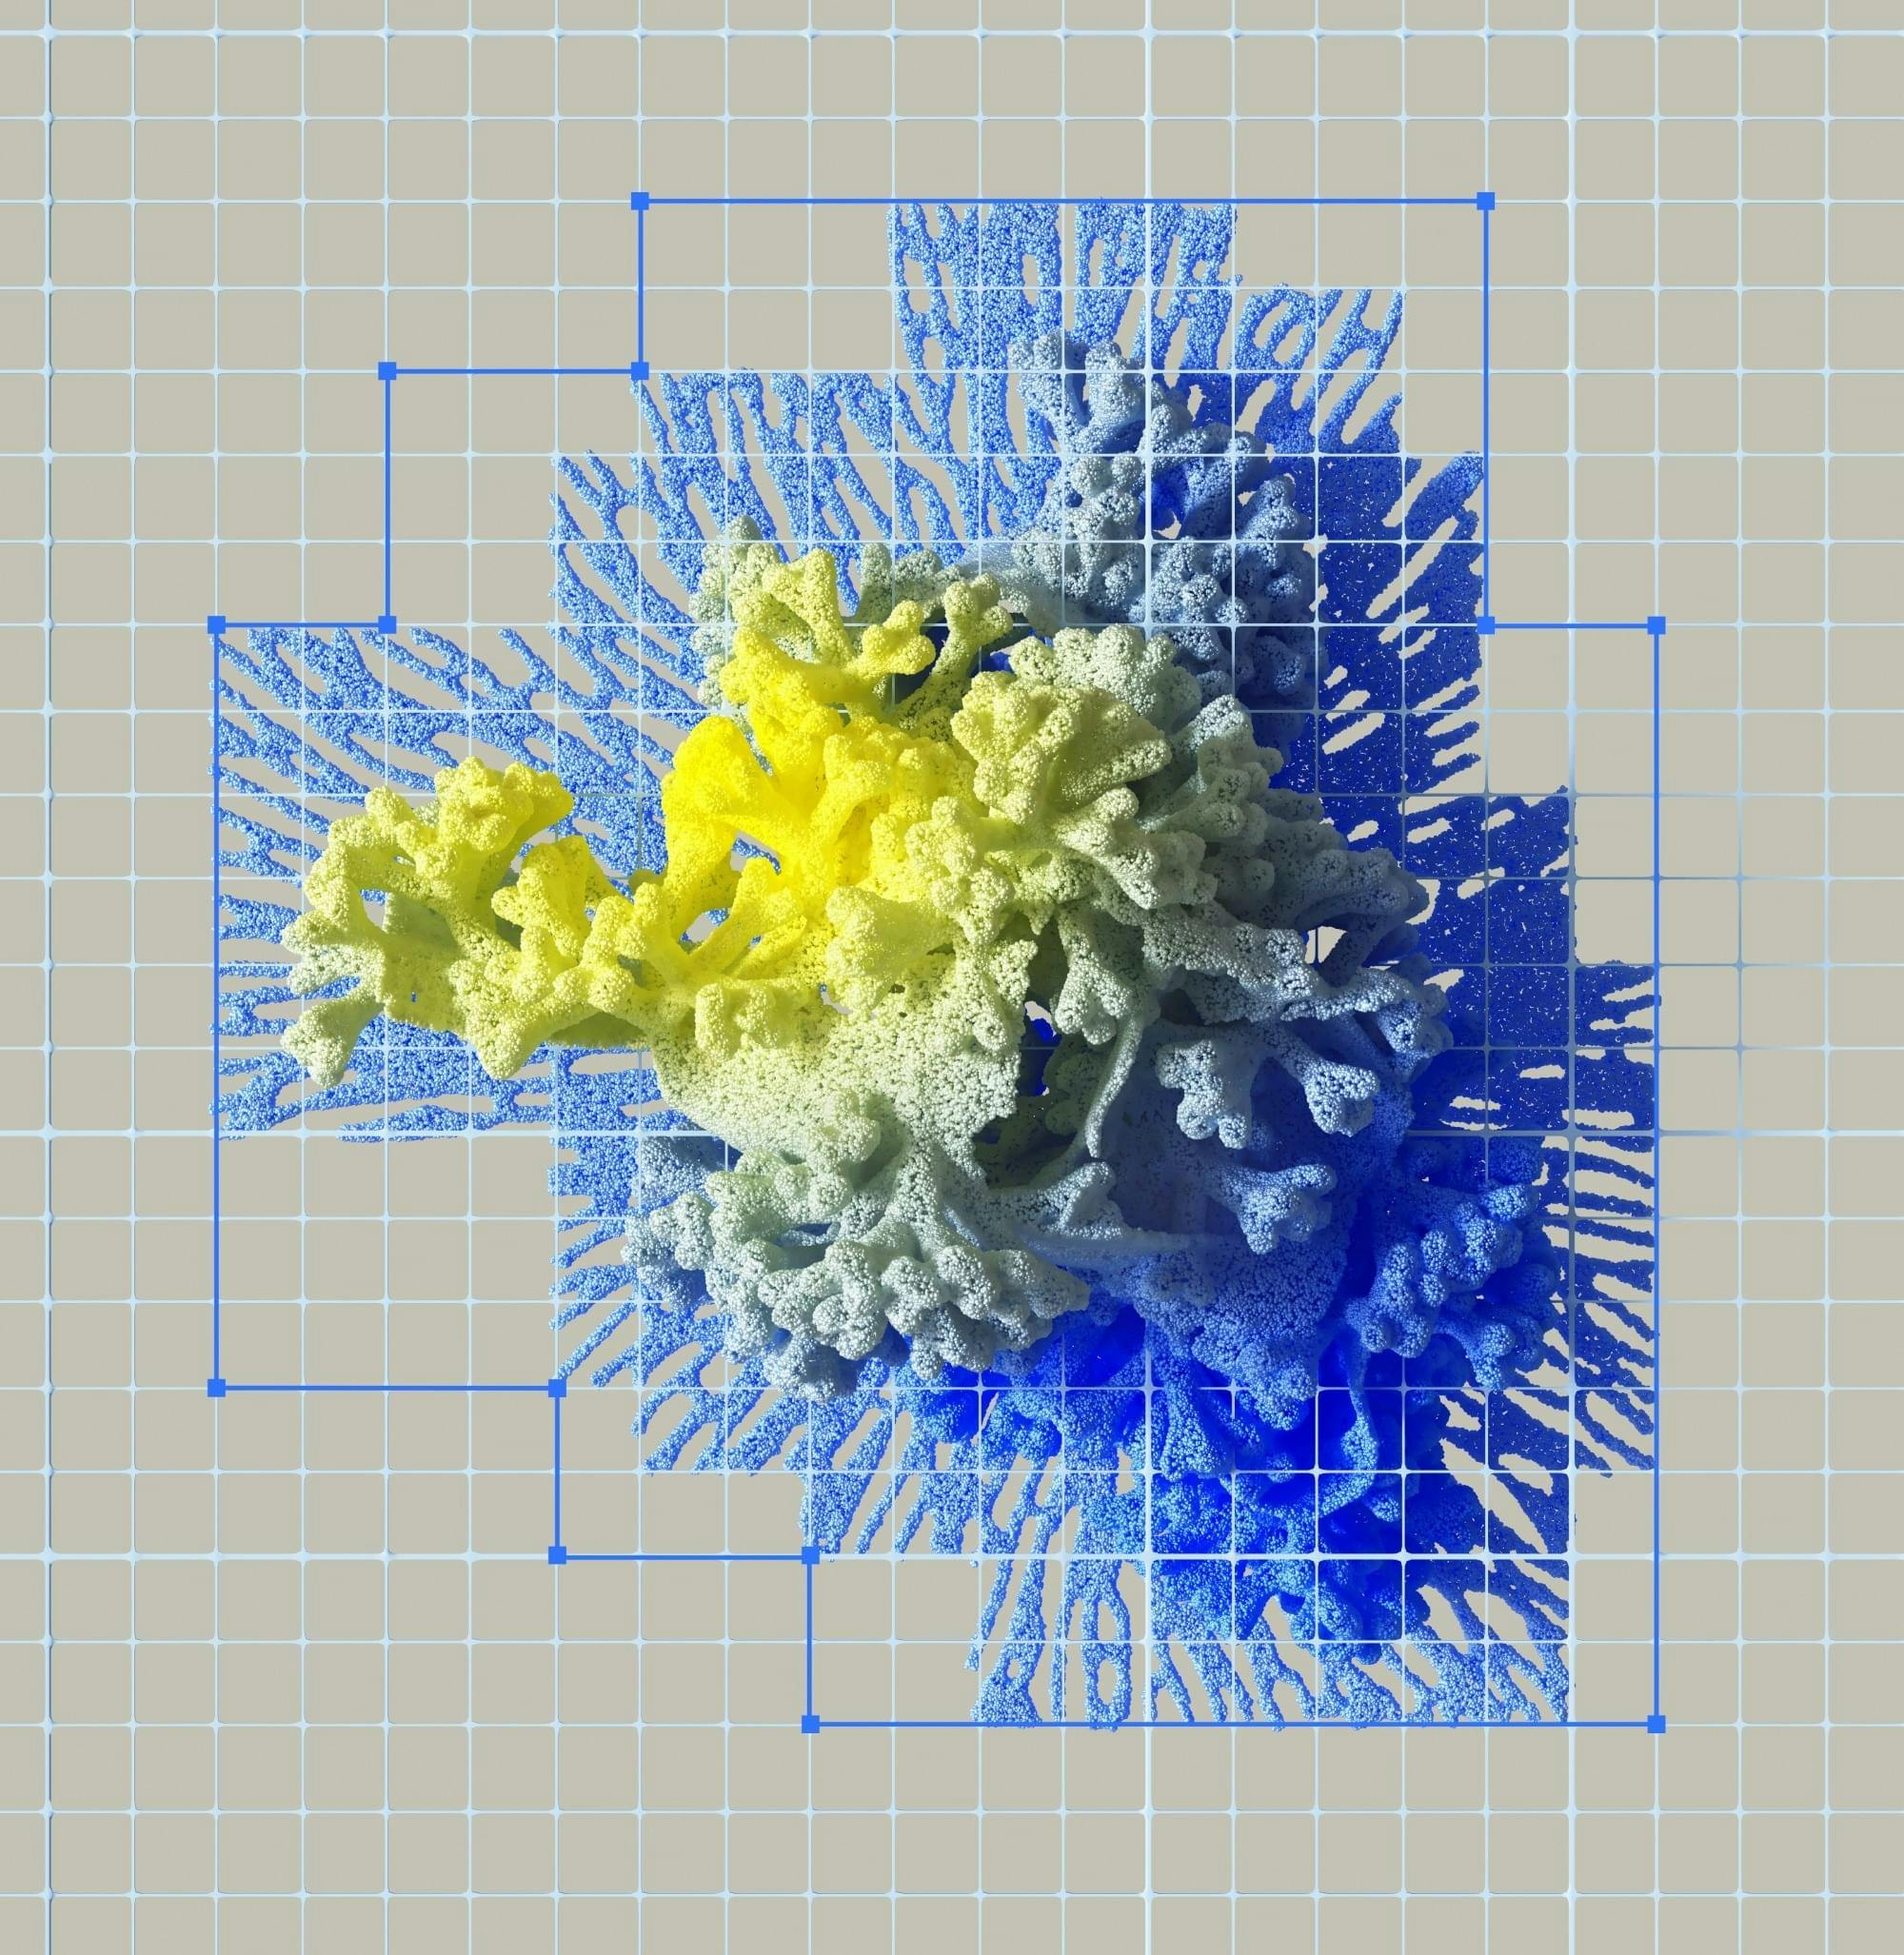 Abstract digitaal kunstwerk met veel lijnen en blauwe, gele en groene kleuren. Lijkt op koraal.